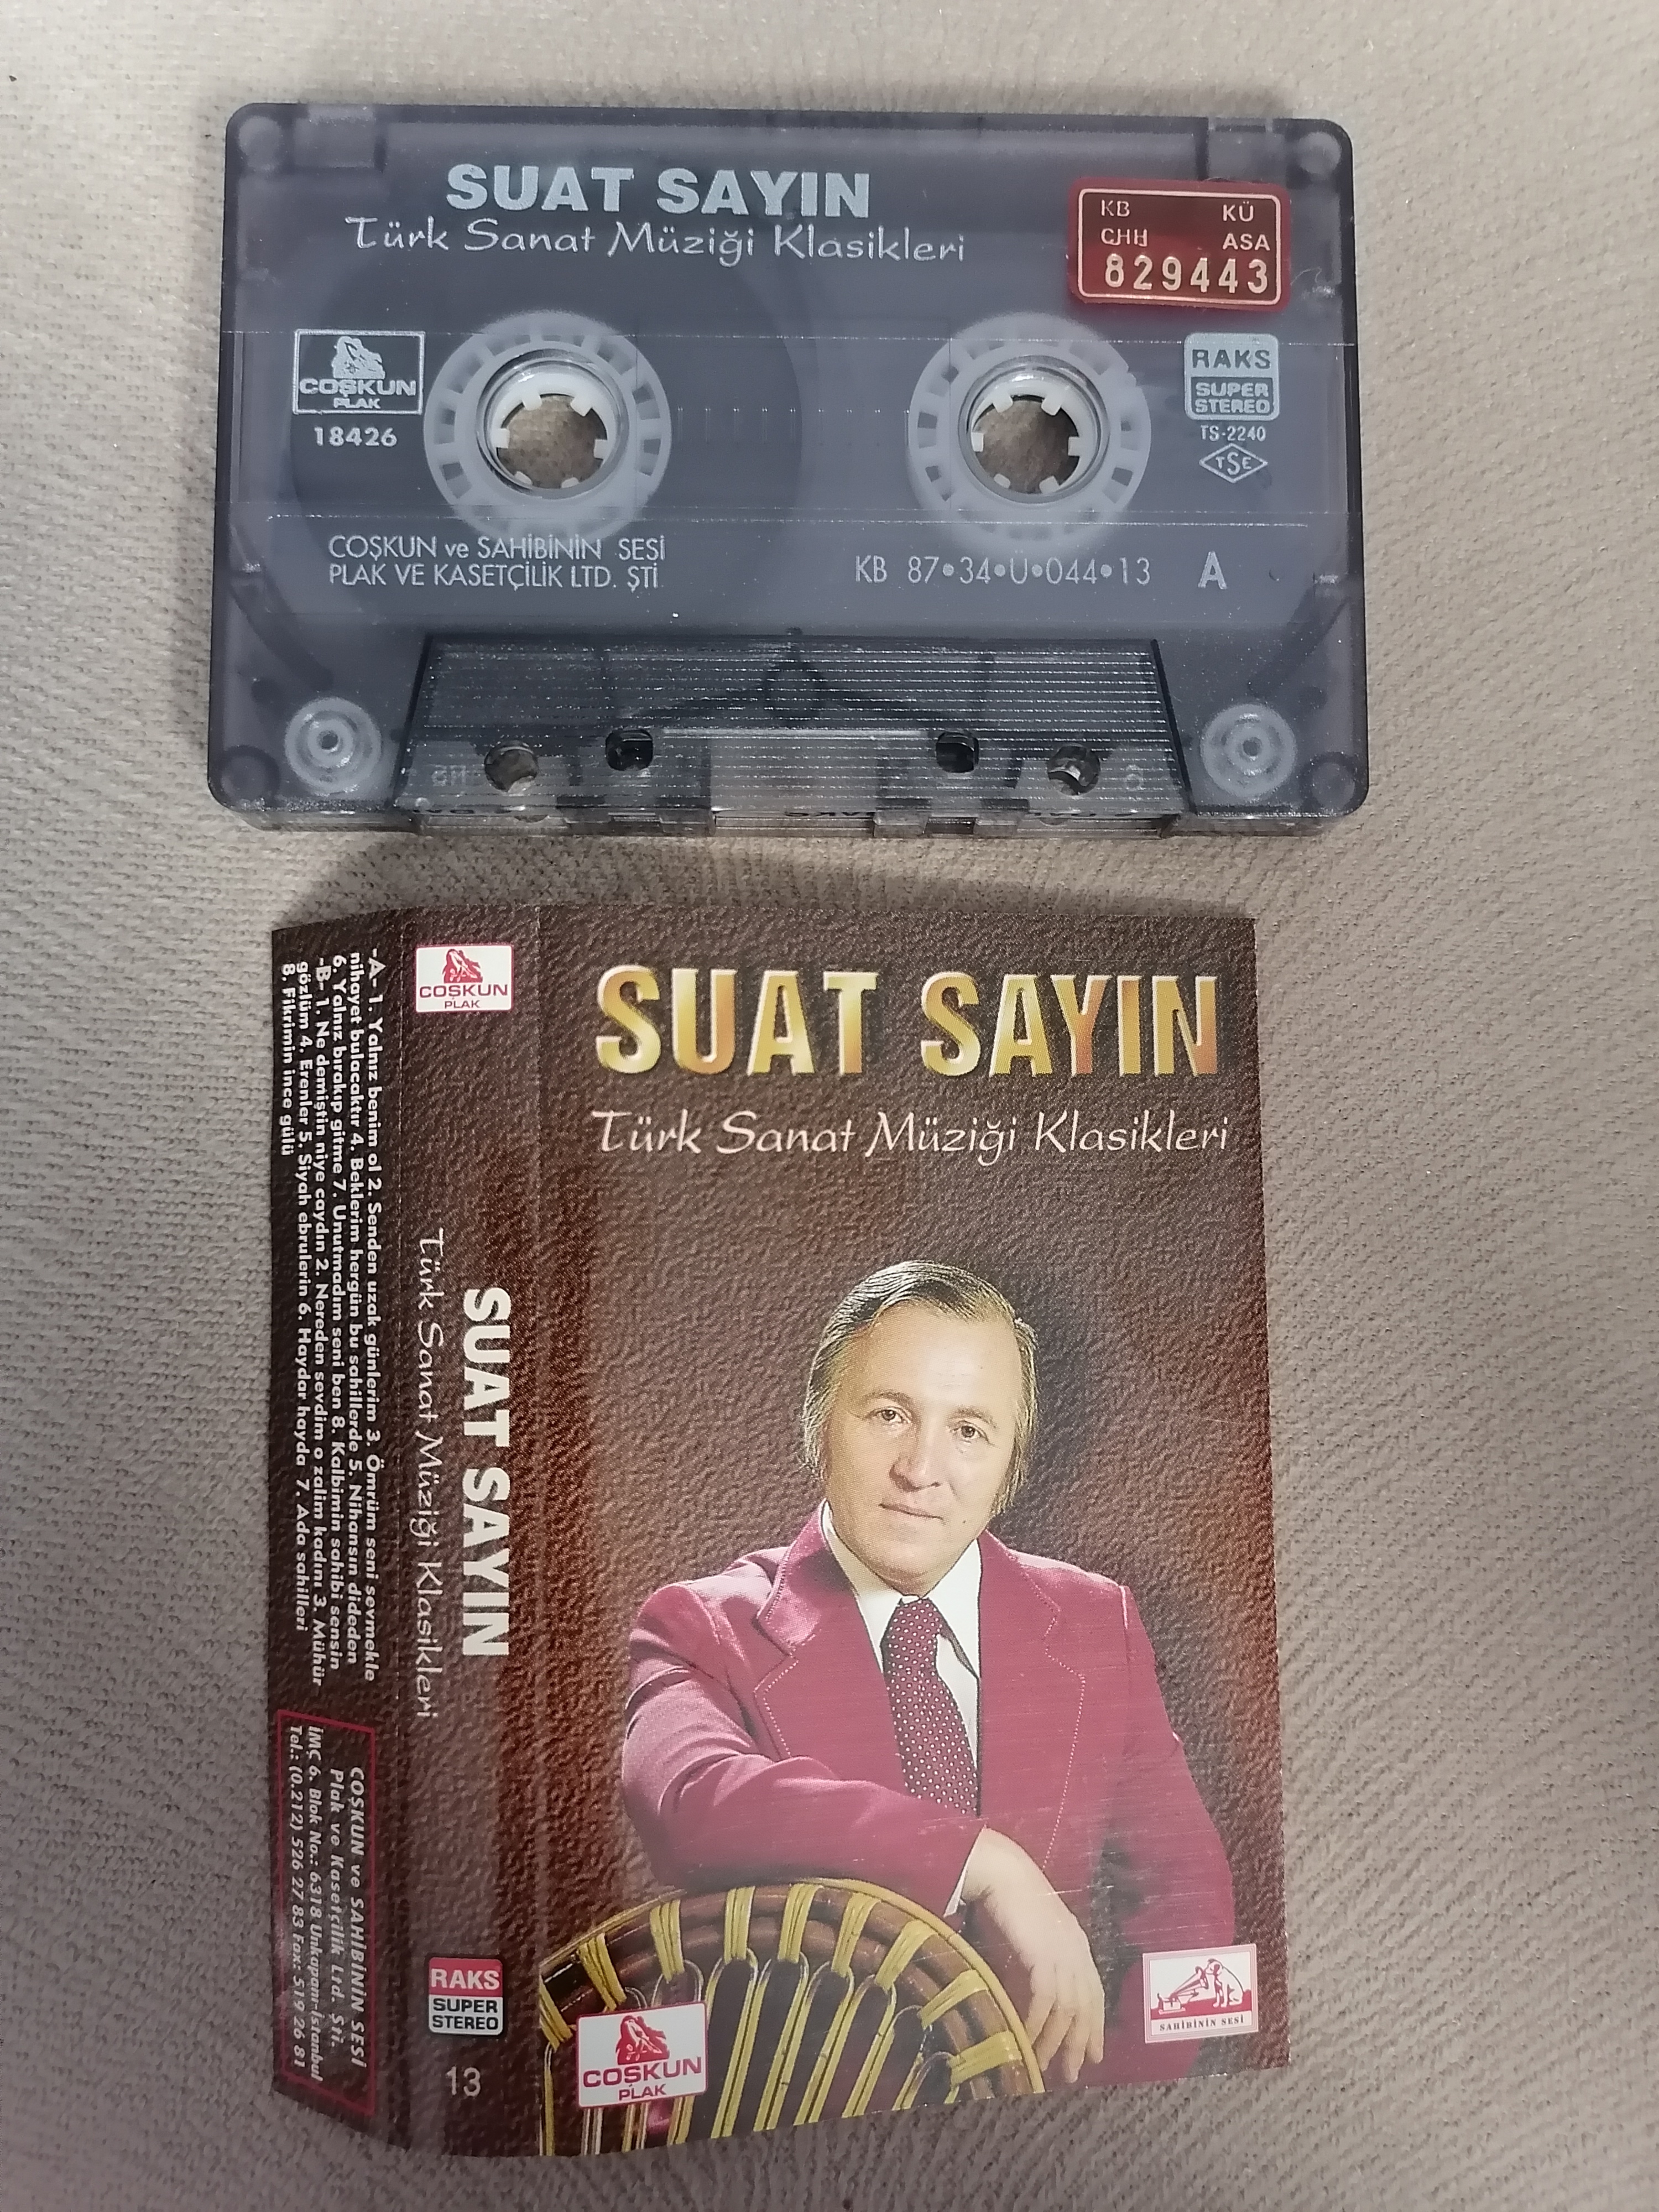 SUAT SAYIN - Türk Sanat Müziği Klasikleri - 1987 Türkiye Basım 2. El Kaset